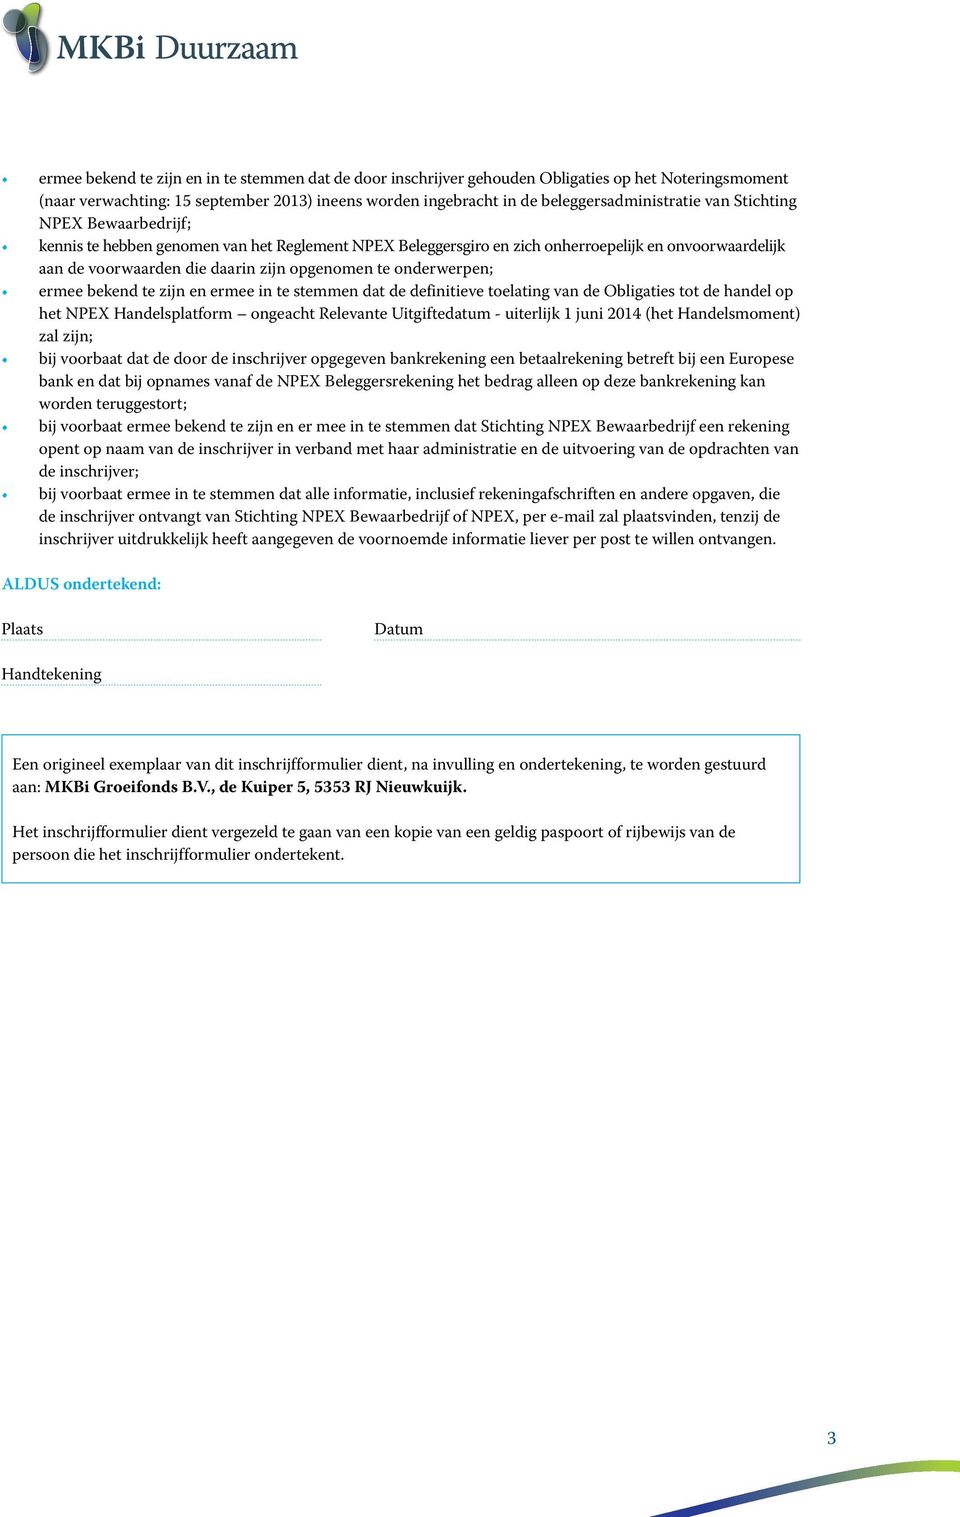 ermee bekend te zijn en ermee in te stemmen dat de definitieve toelating van de Obligaties tot de handel op het NPEX Handelsplatform ongeacht Relevante Uitgiftedatum - uiterlijk 1 juni 2014 (het